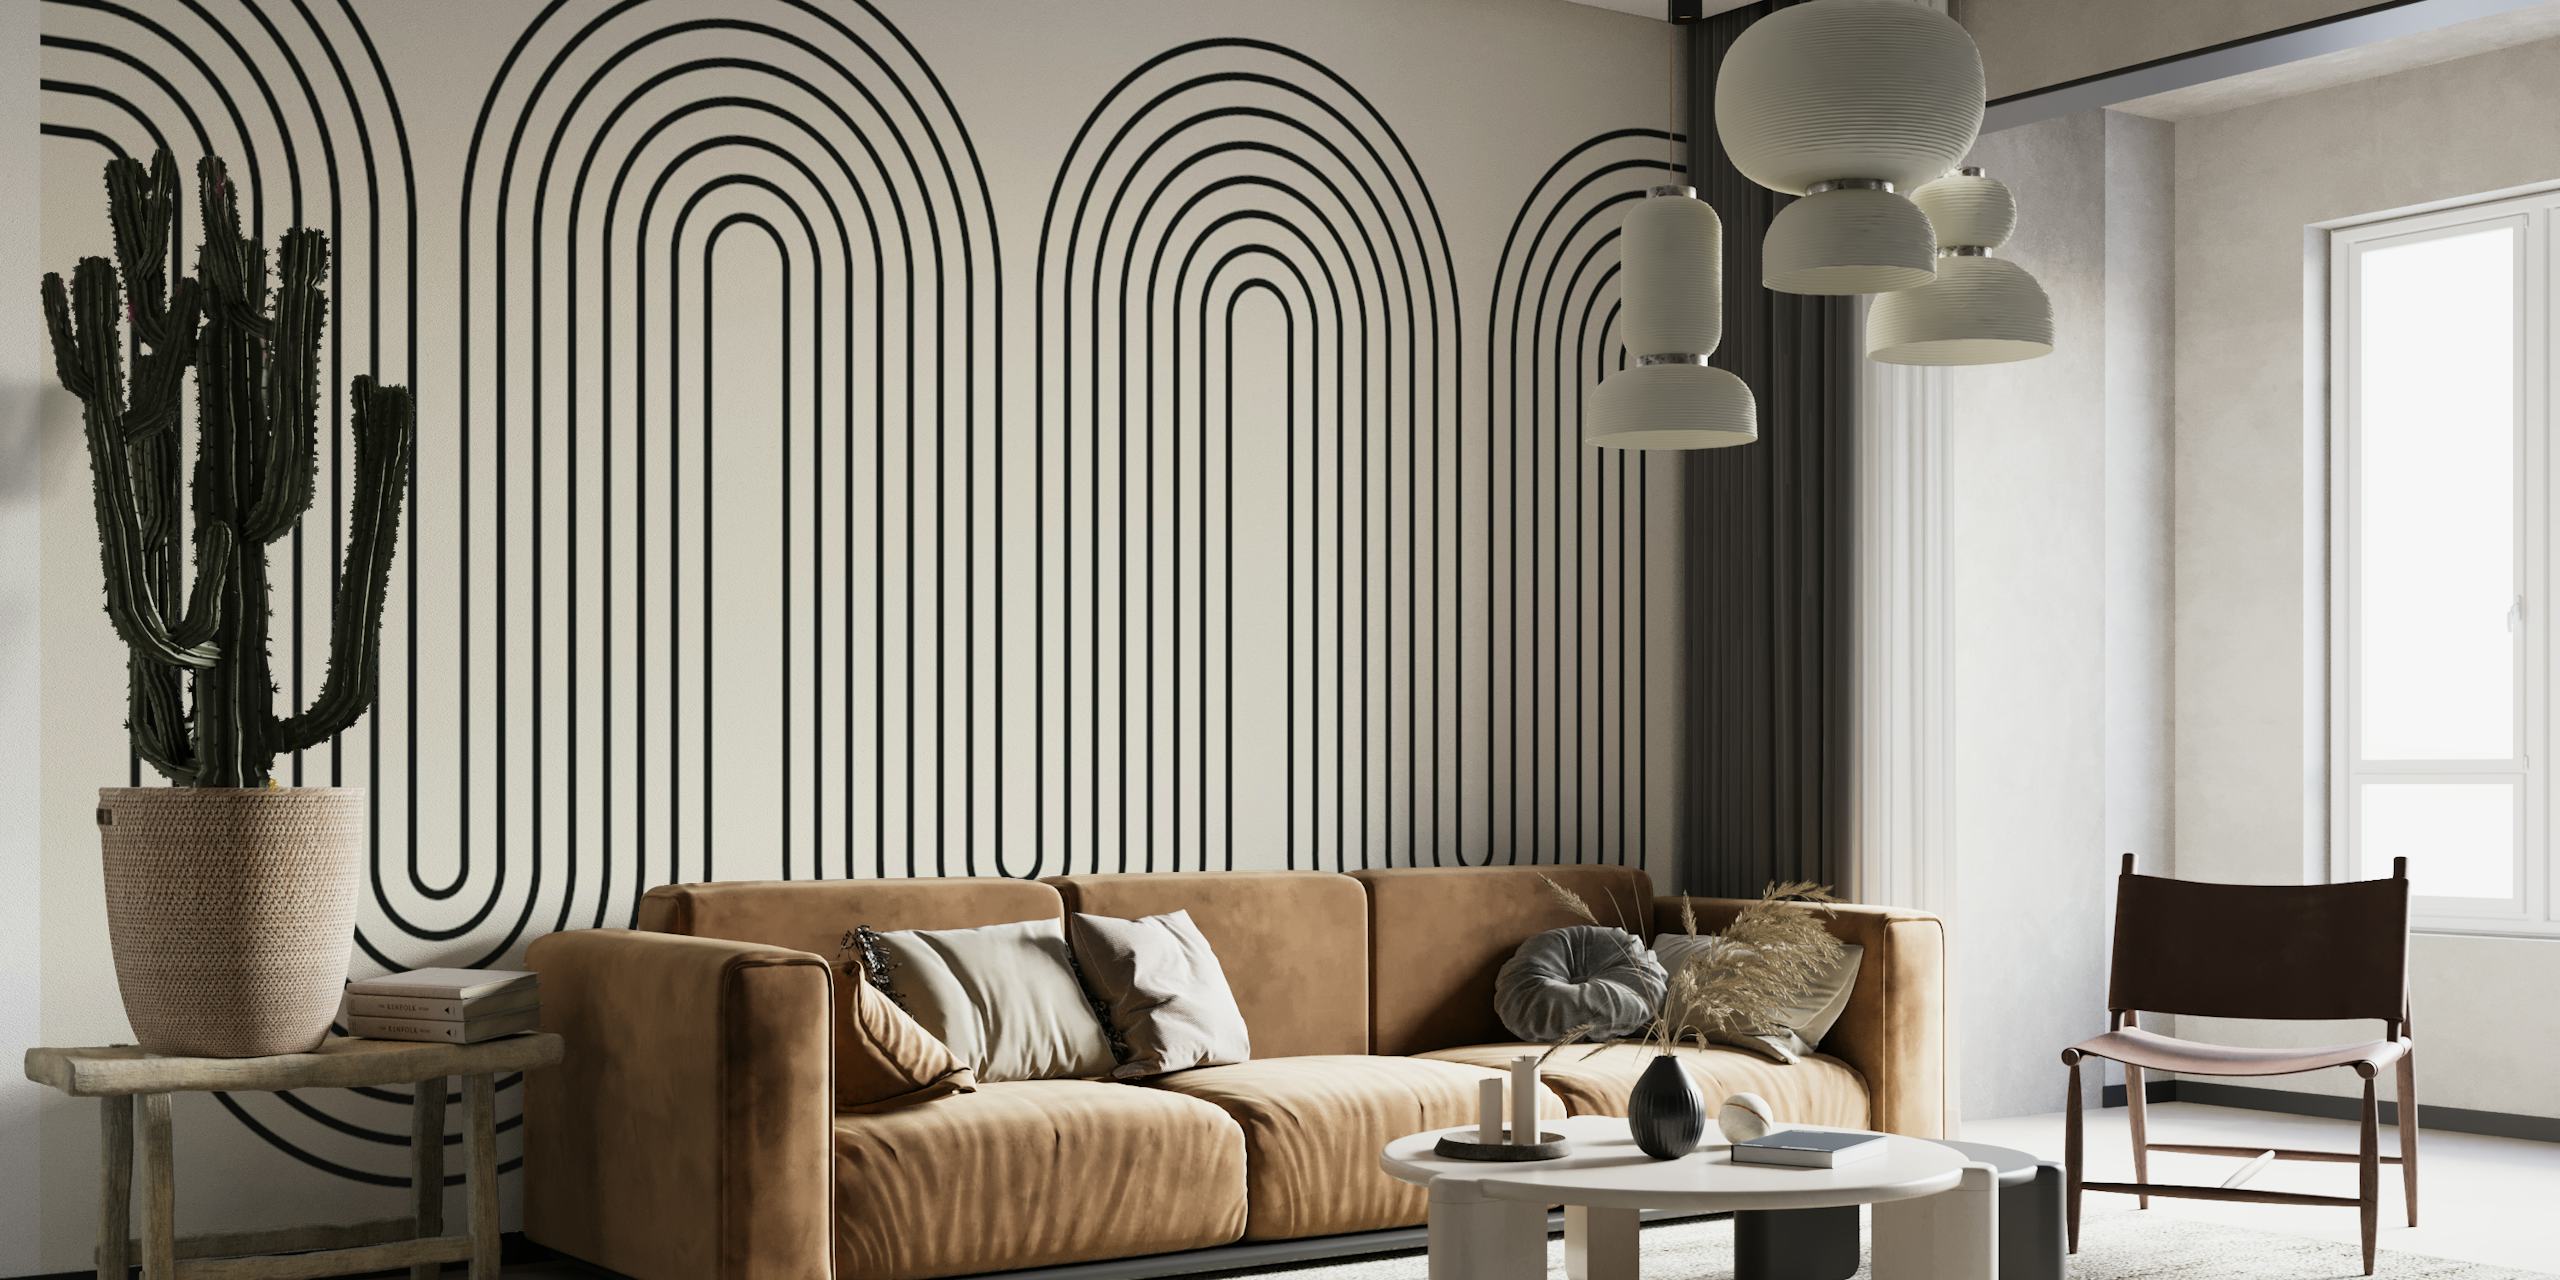 Moderne, minimalistische muurschildering met golvende lijnen in grijstinten